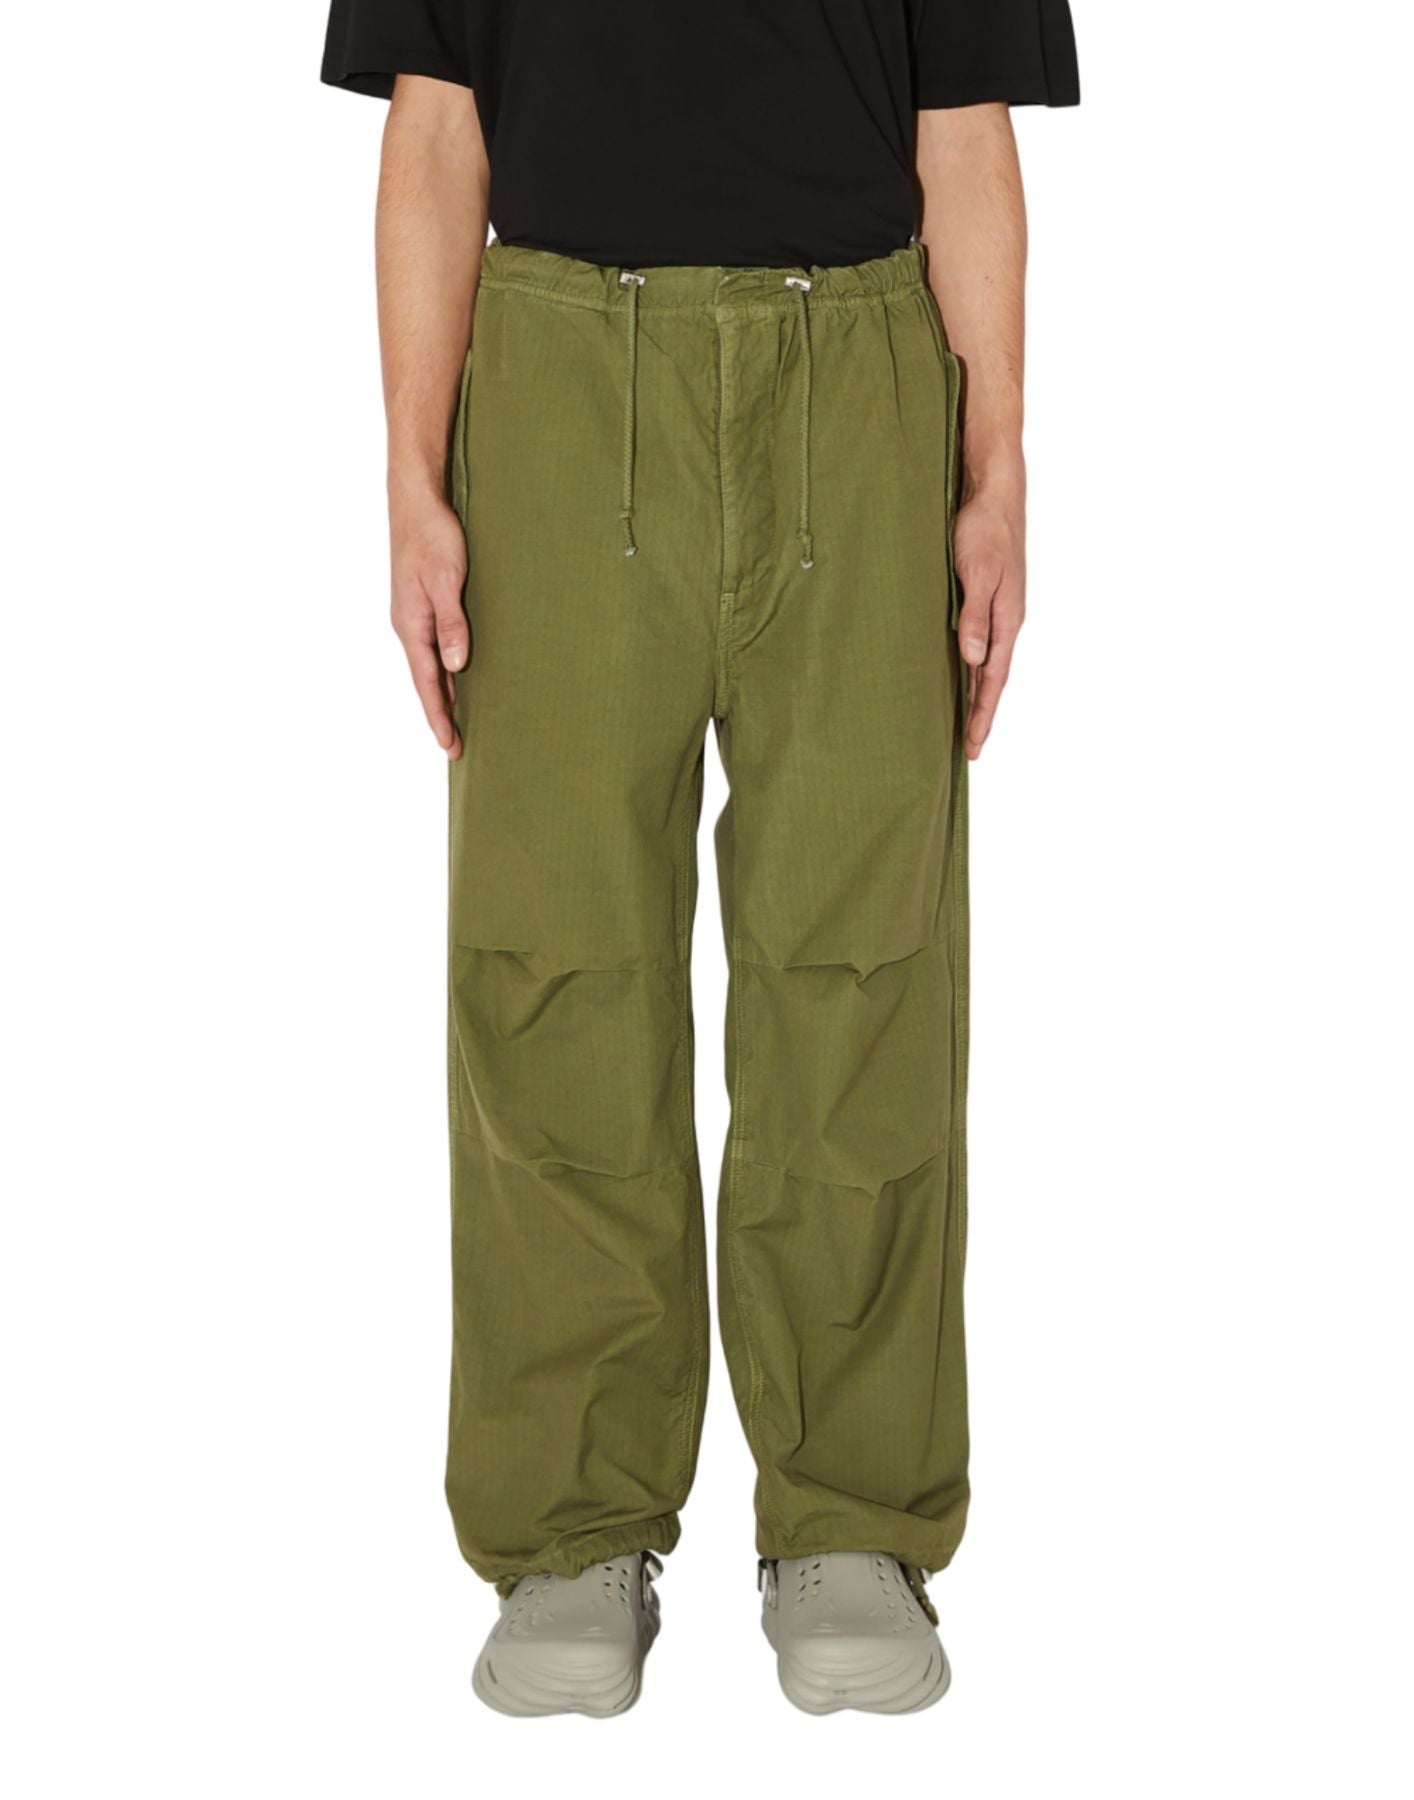 Pants for man AMU067P4160111 ARMY GREEN Amish